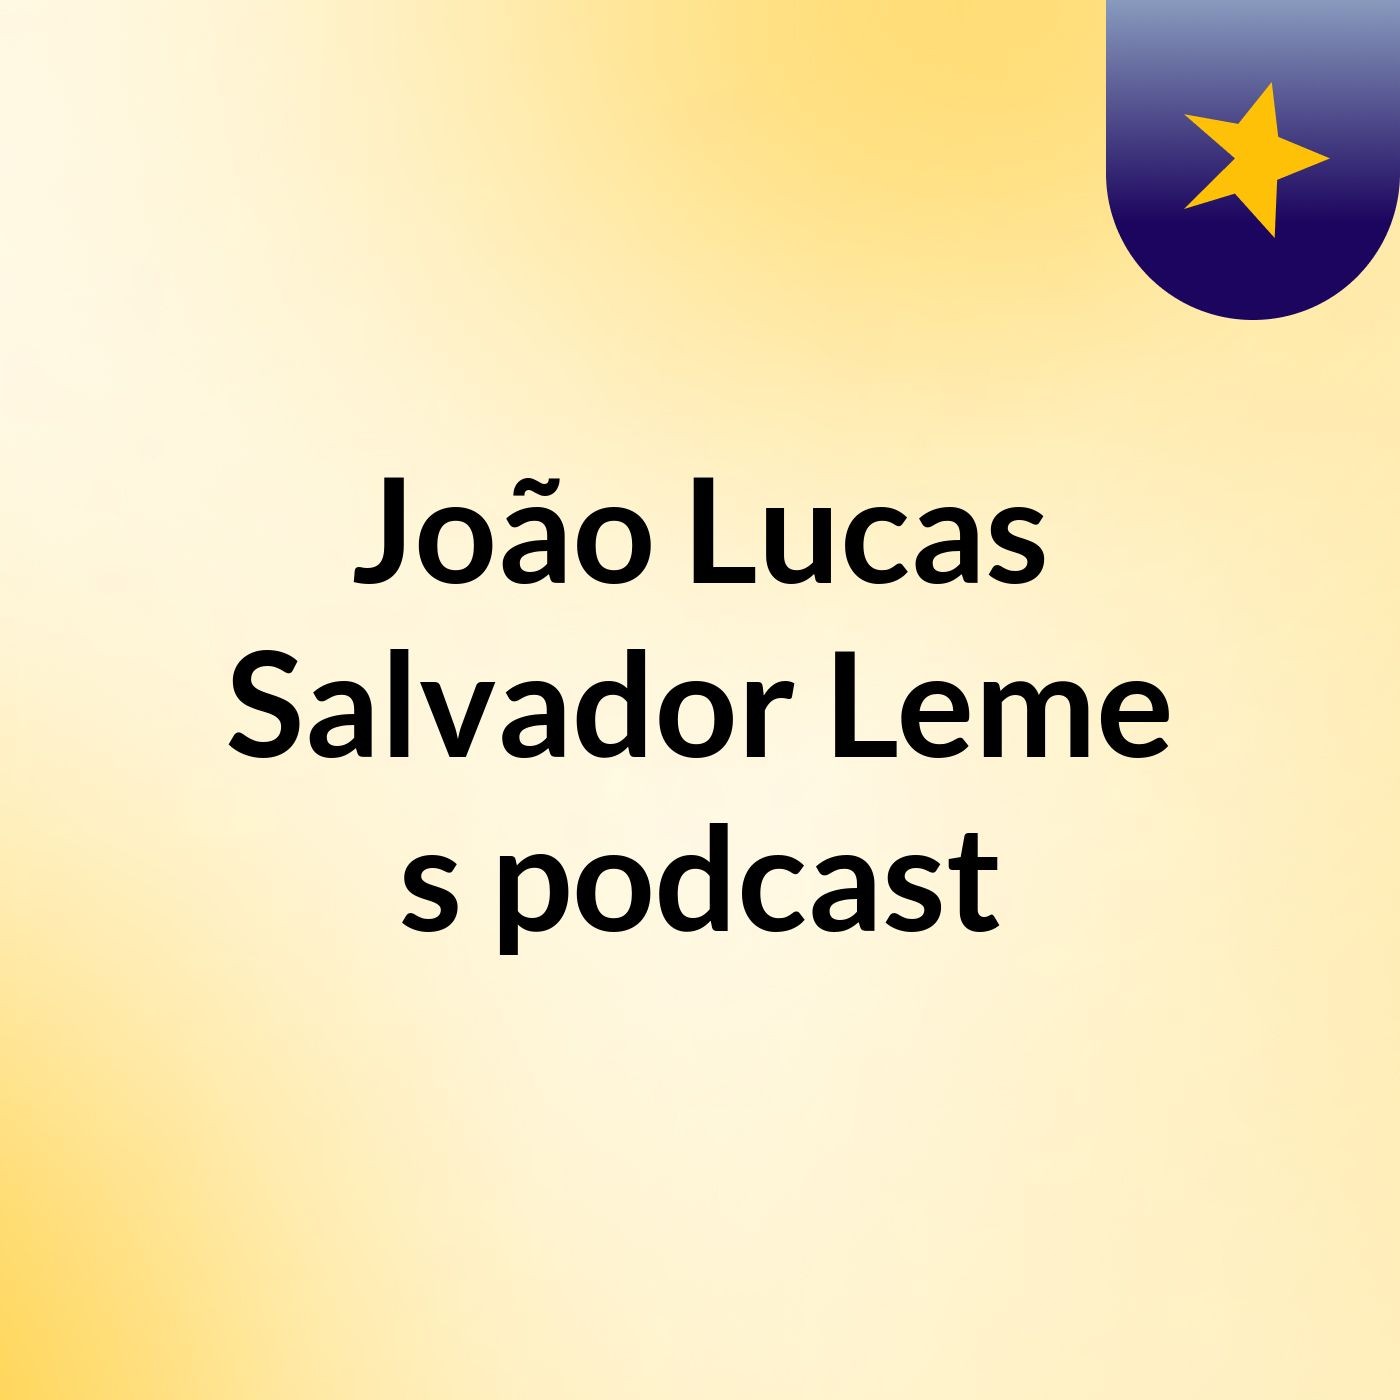 João Lucas Salvador Leme's podcast